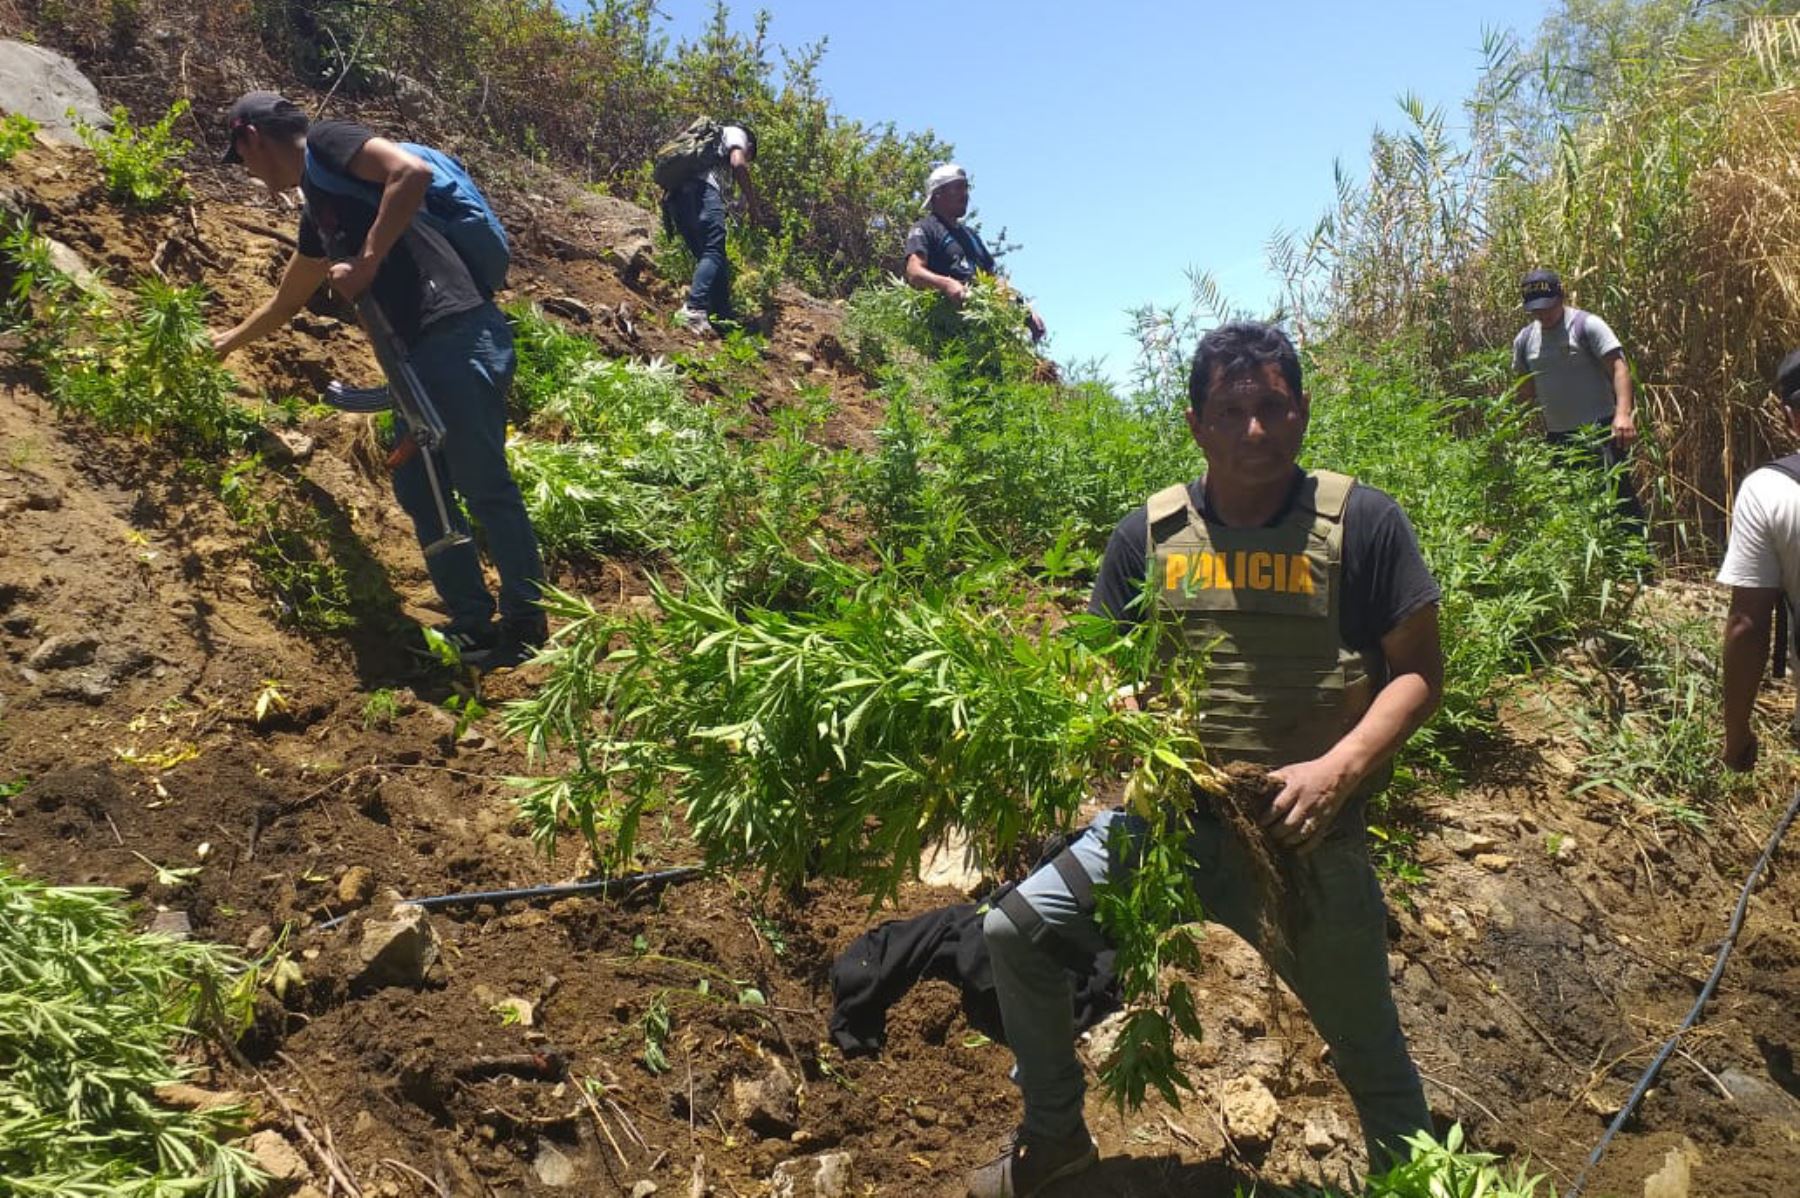 Efectivos de la PNP decomisaron e incineraron 3,520 plantones de marihuana en la quebrada de Carricillo, región Áncash,